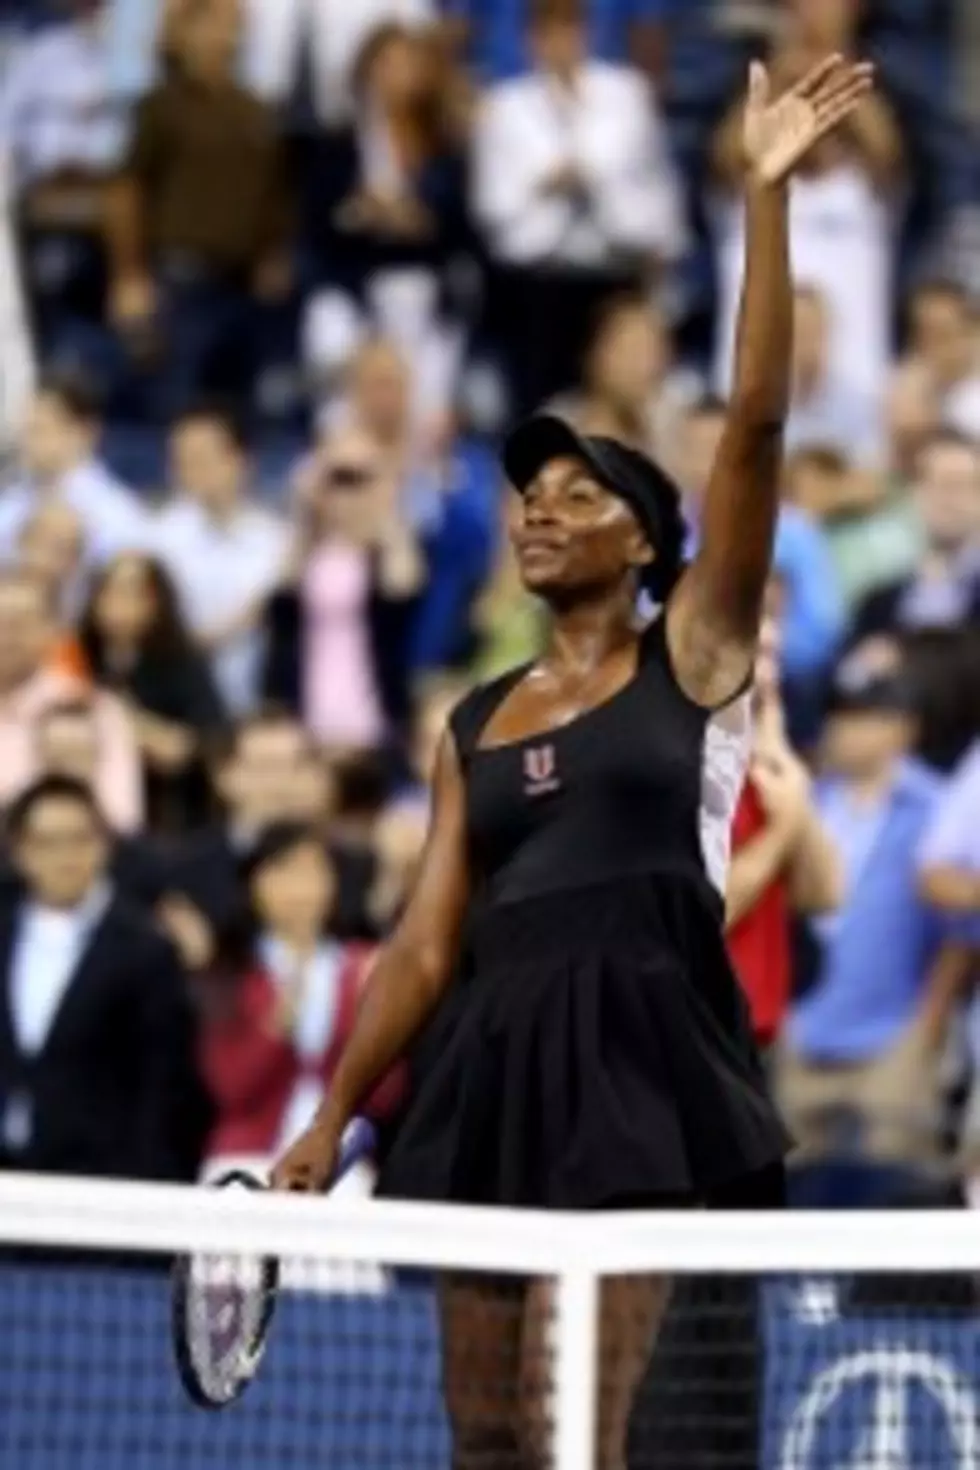 Should Venus Williams retire?